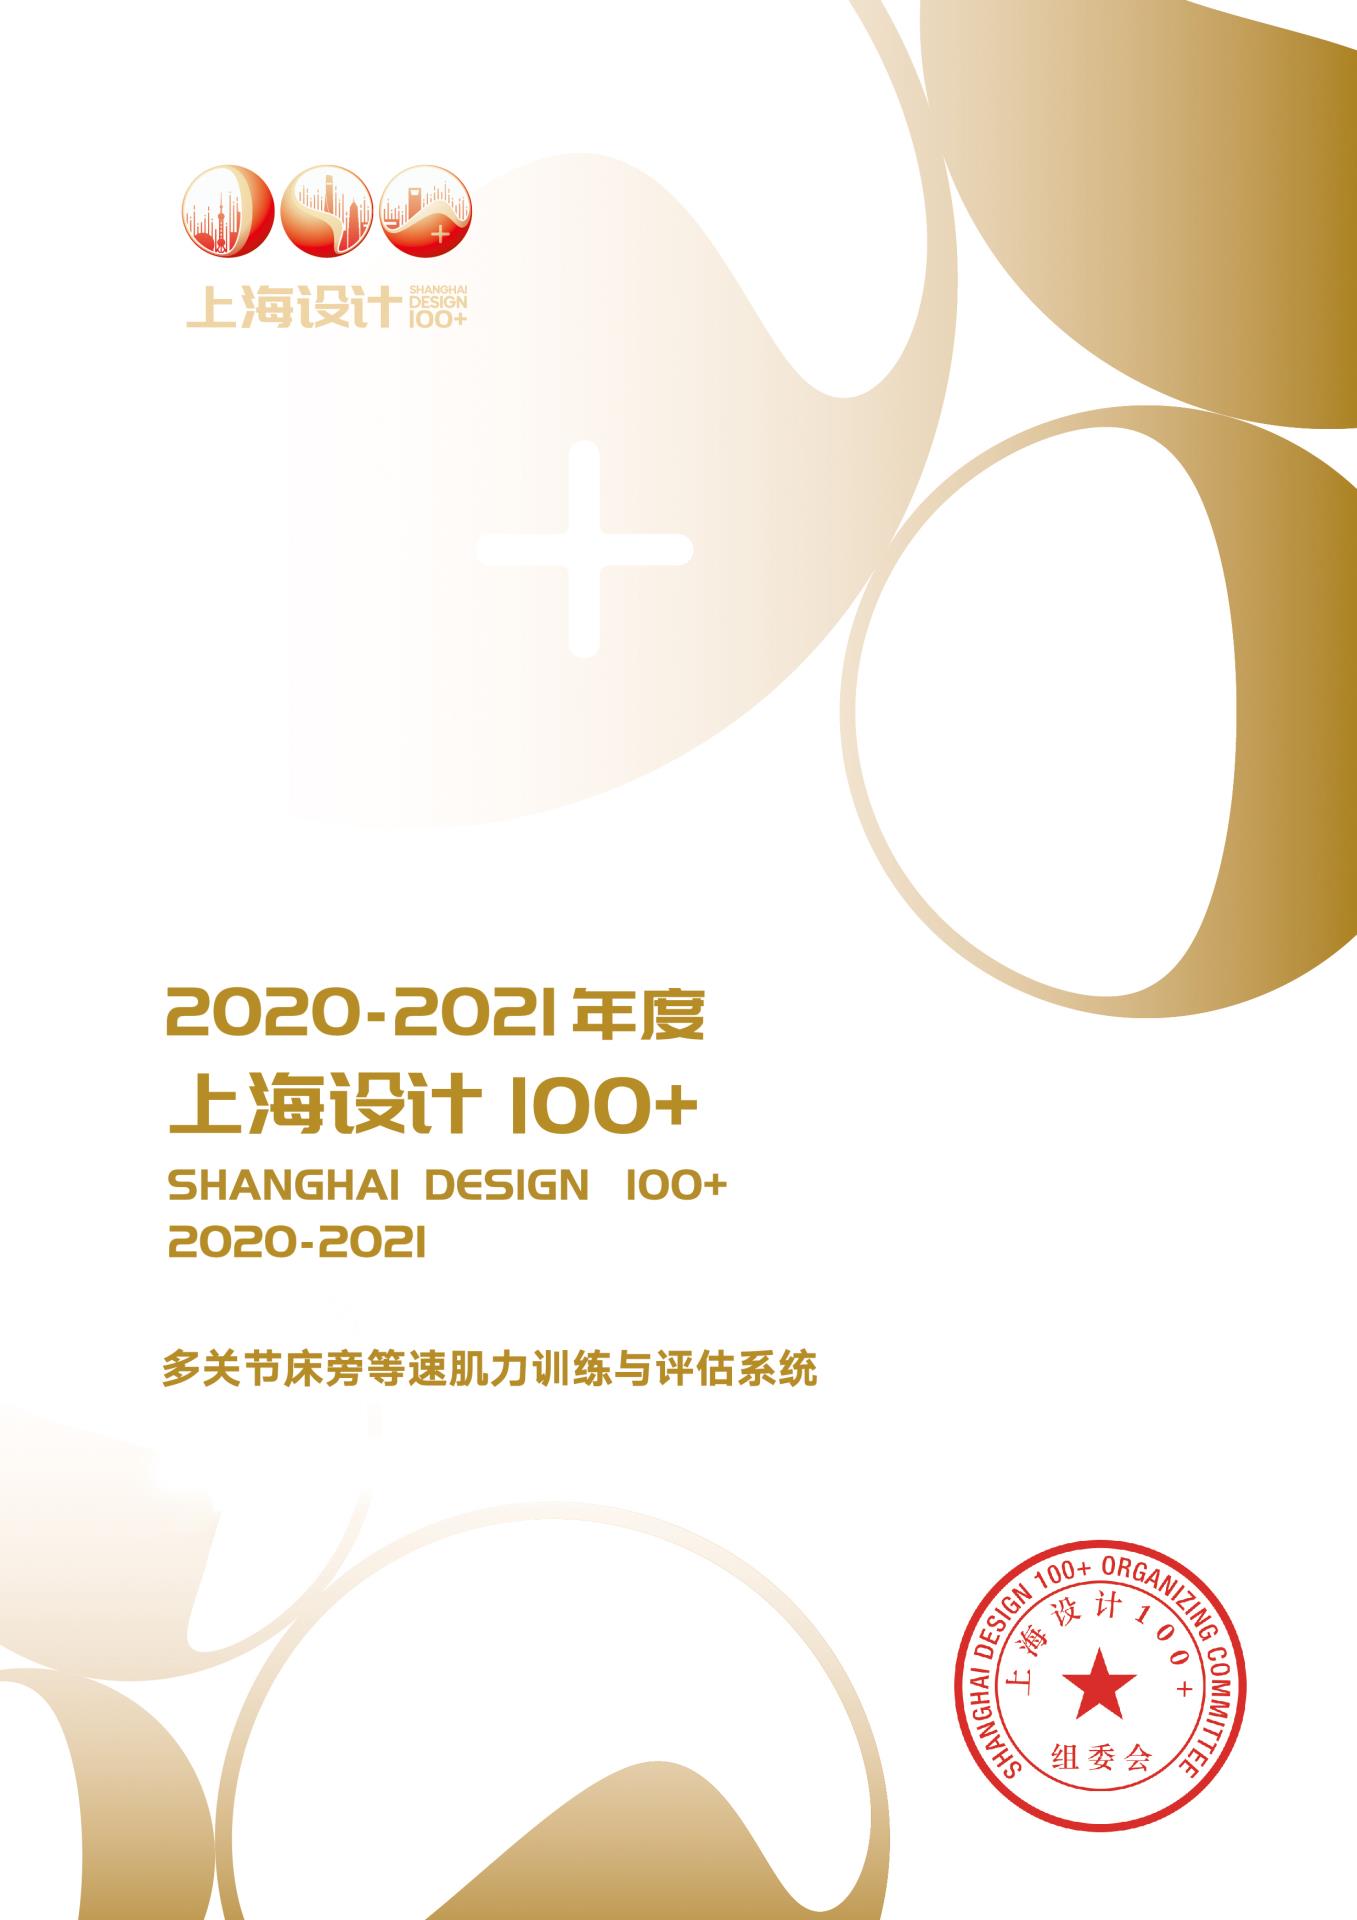 12 2021 上海设计100+ 《多关节床旁等速肌力训练与评估系统》获奖作品.jpg